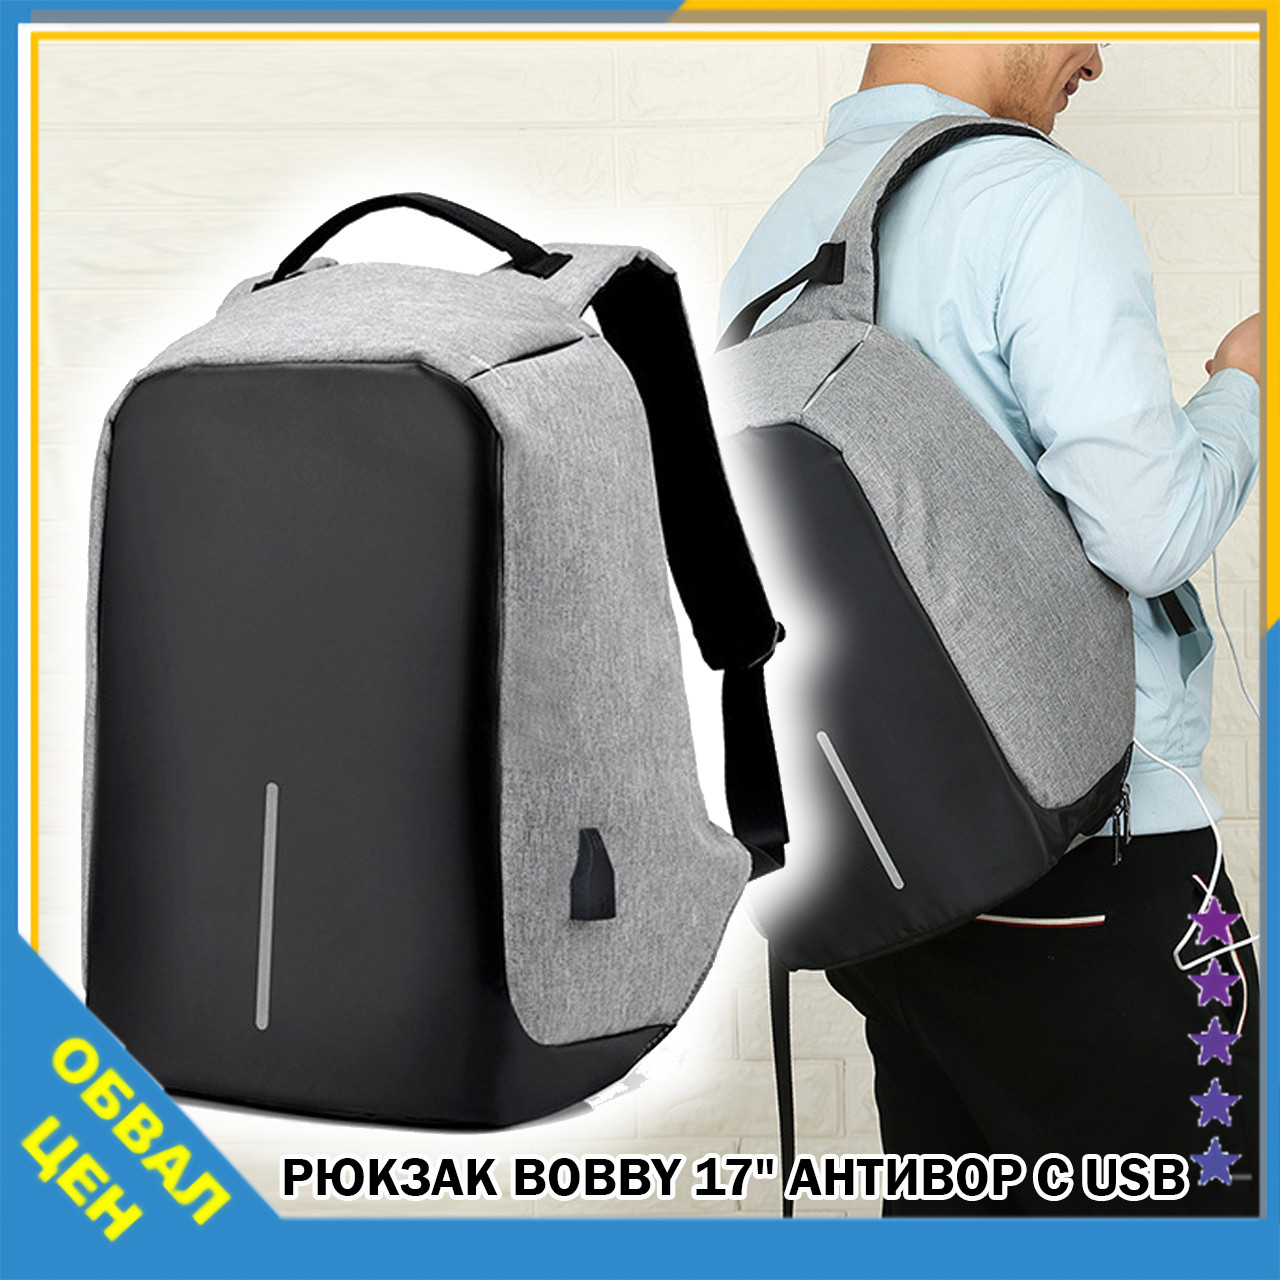 Рюкзак міський Bobby 17" антизлодій під ноутбук з USB / водовідштовхувальний Сірий, Боббі, дюймів репліка Сірий